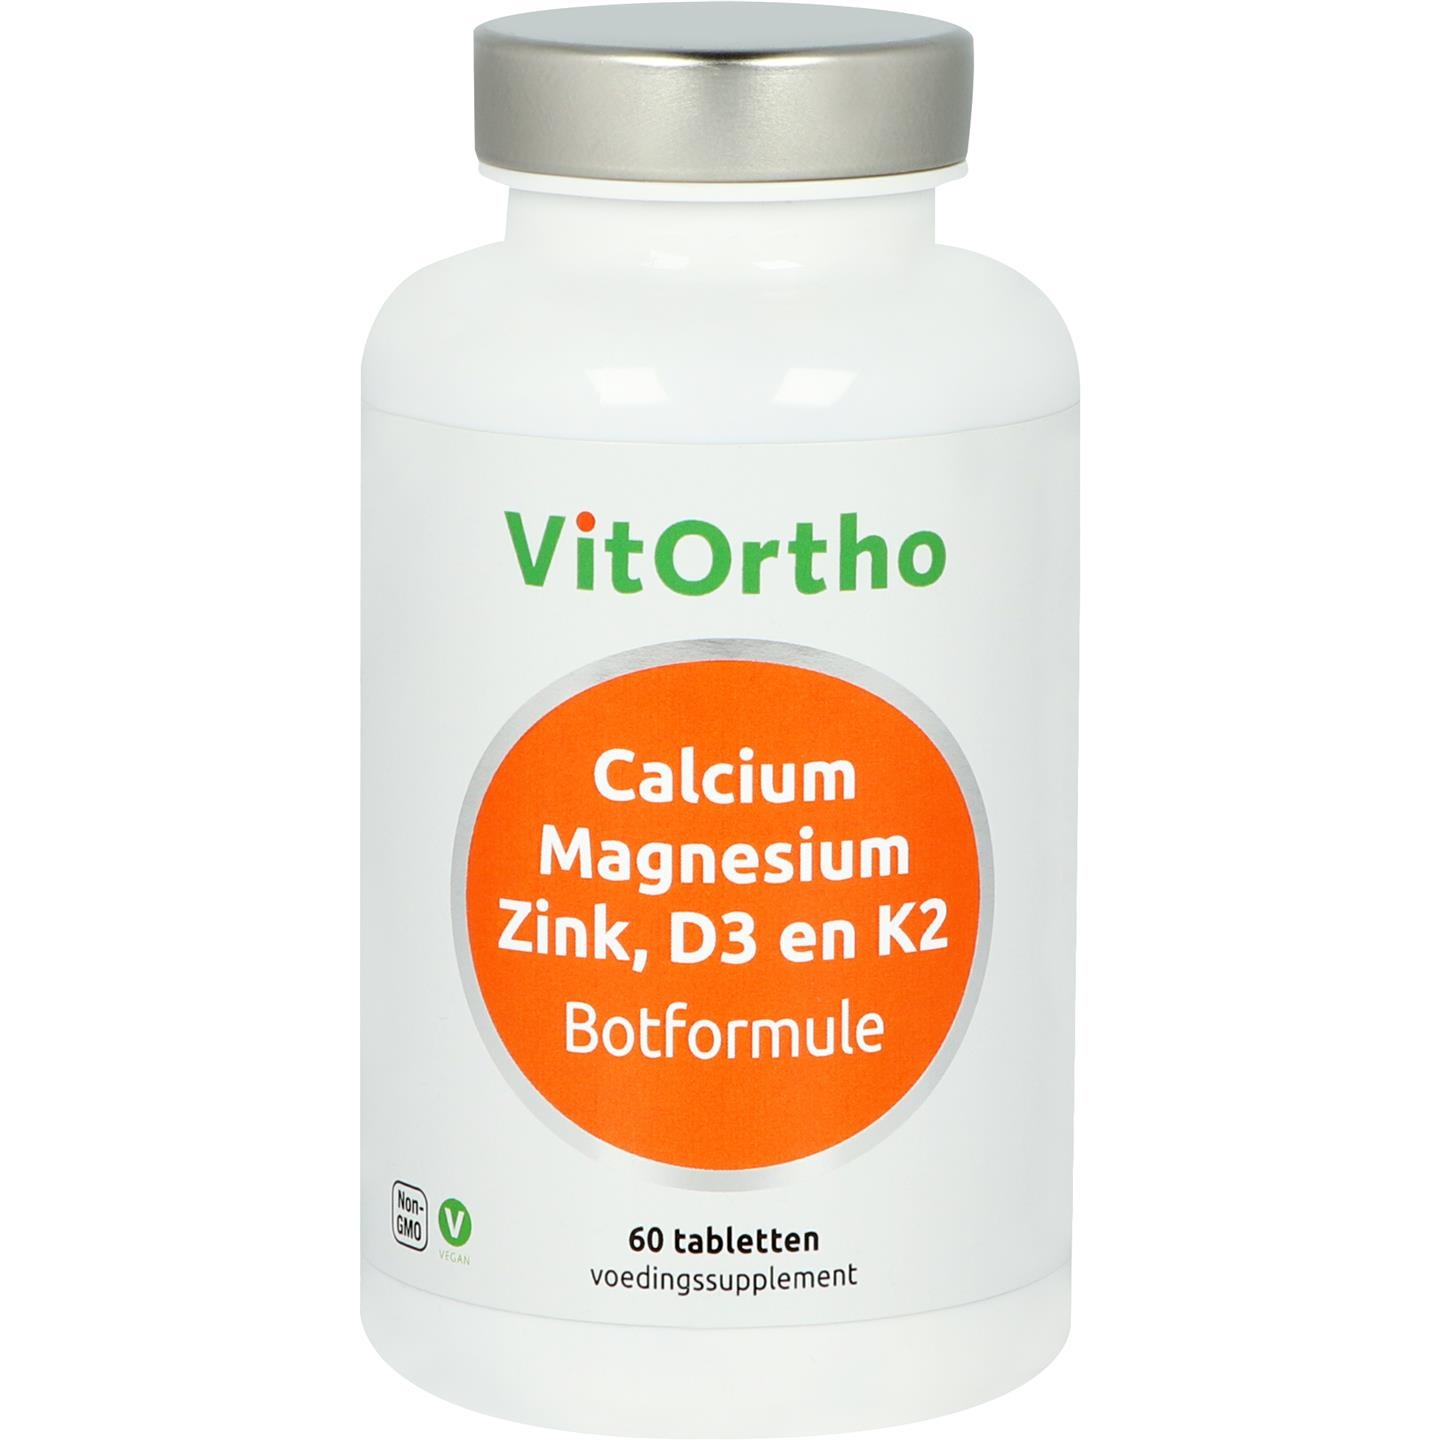 Vitortho VitOrtho BotForm (60 Tabletten)